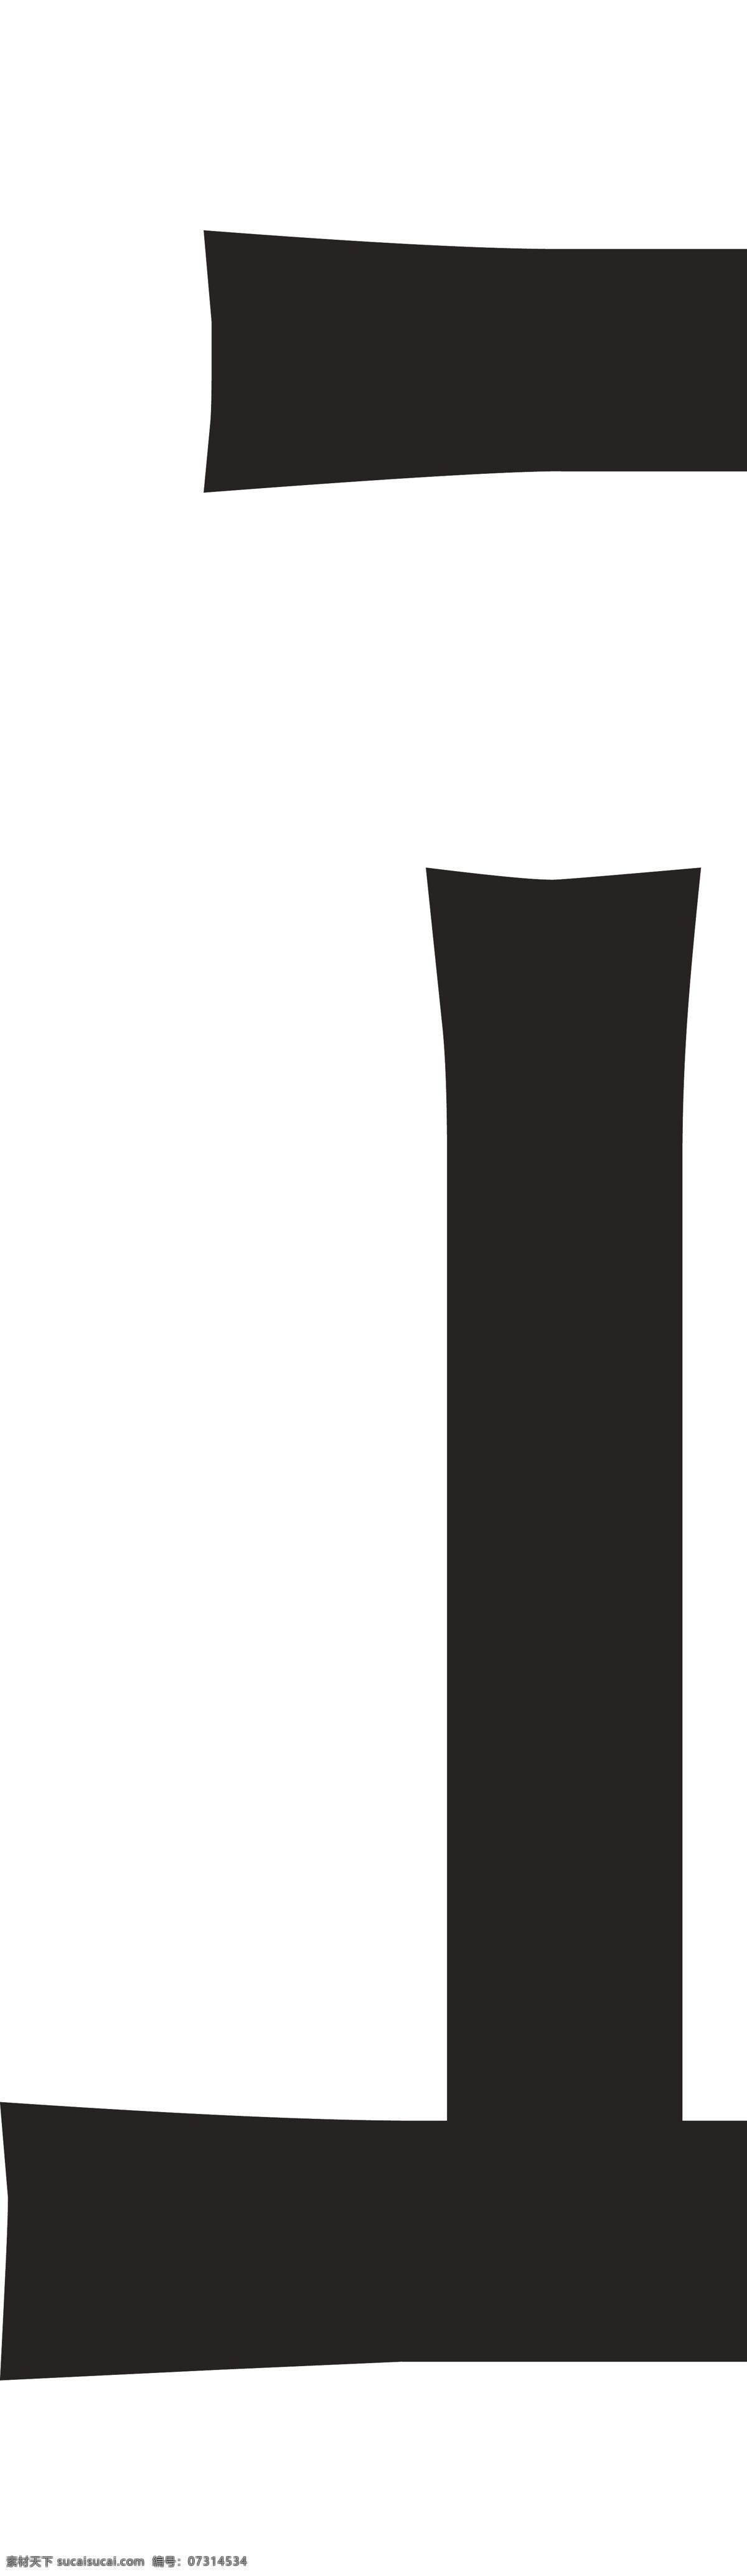 红酒瓶贴标签 金银黑系列 鹦鹉底纹 红酒瓶标贴 葡萄酒瓶 包装设计 酒标不干胶 品名 logo 展翅 鹦鹉 底纹 构图 三系列金色 银色 黑色 英文标识设计 名片卡片 矢量